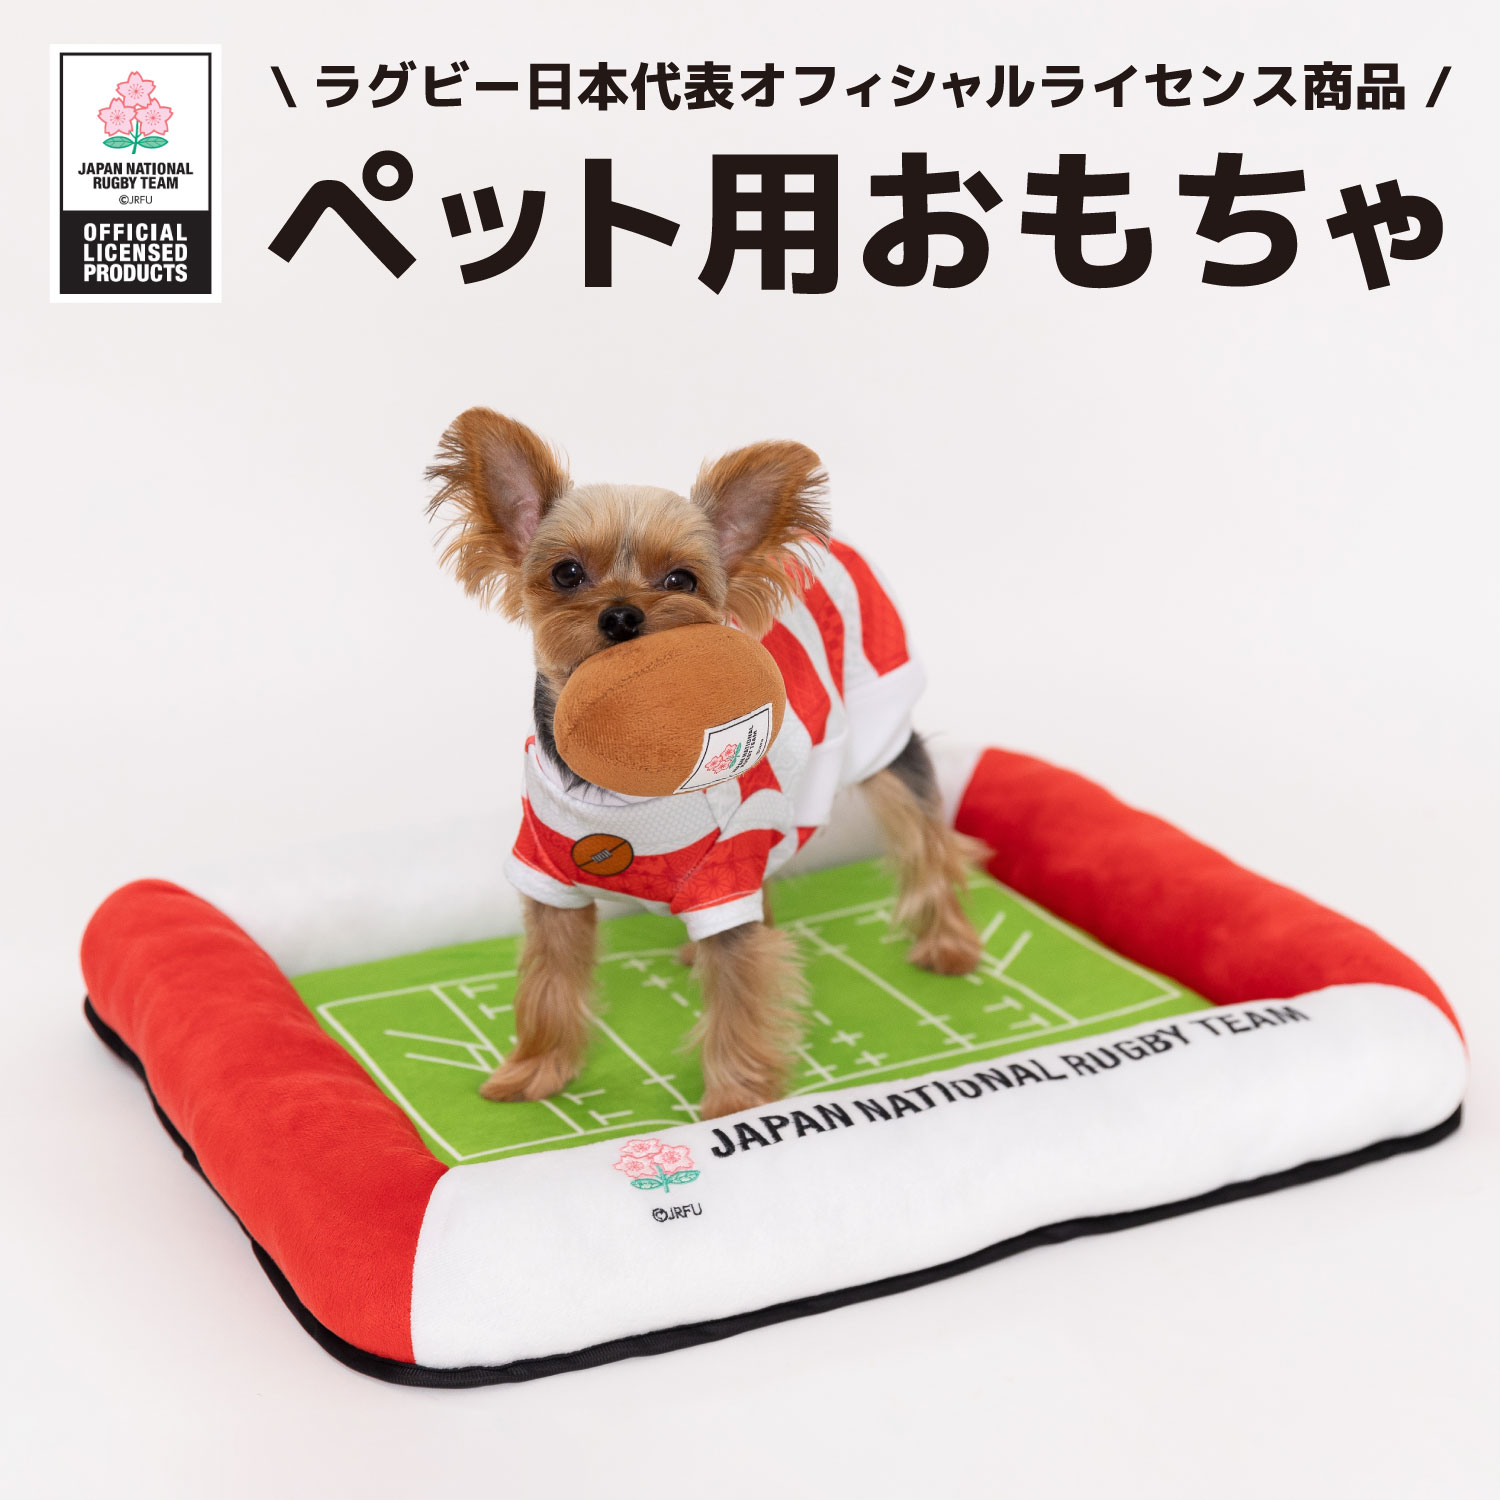 ラグビー日本代表 ボールトイrn233-071-001犬のおもちゃ 猫のおもちゃ 犬 いぬ 猫 ねこ ネコ ペット お..